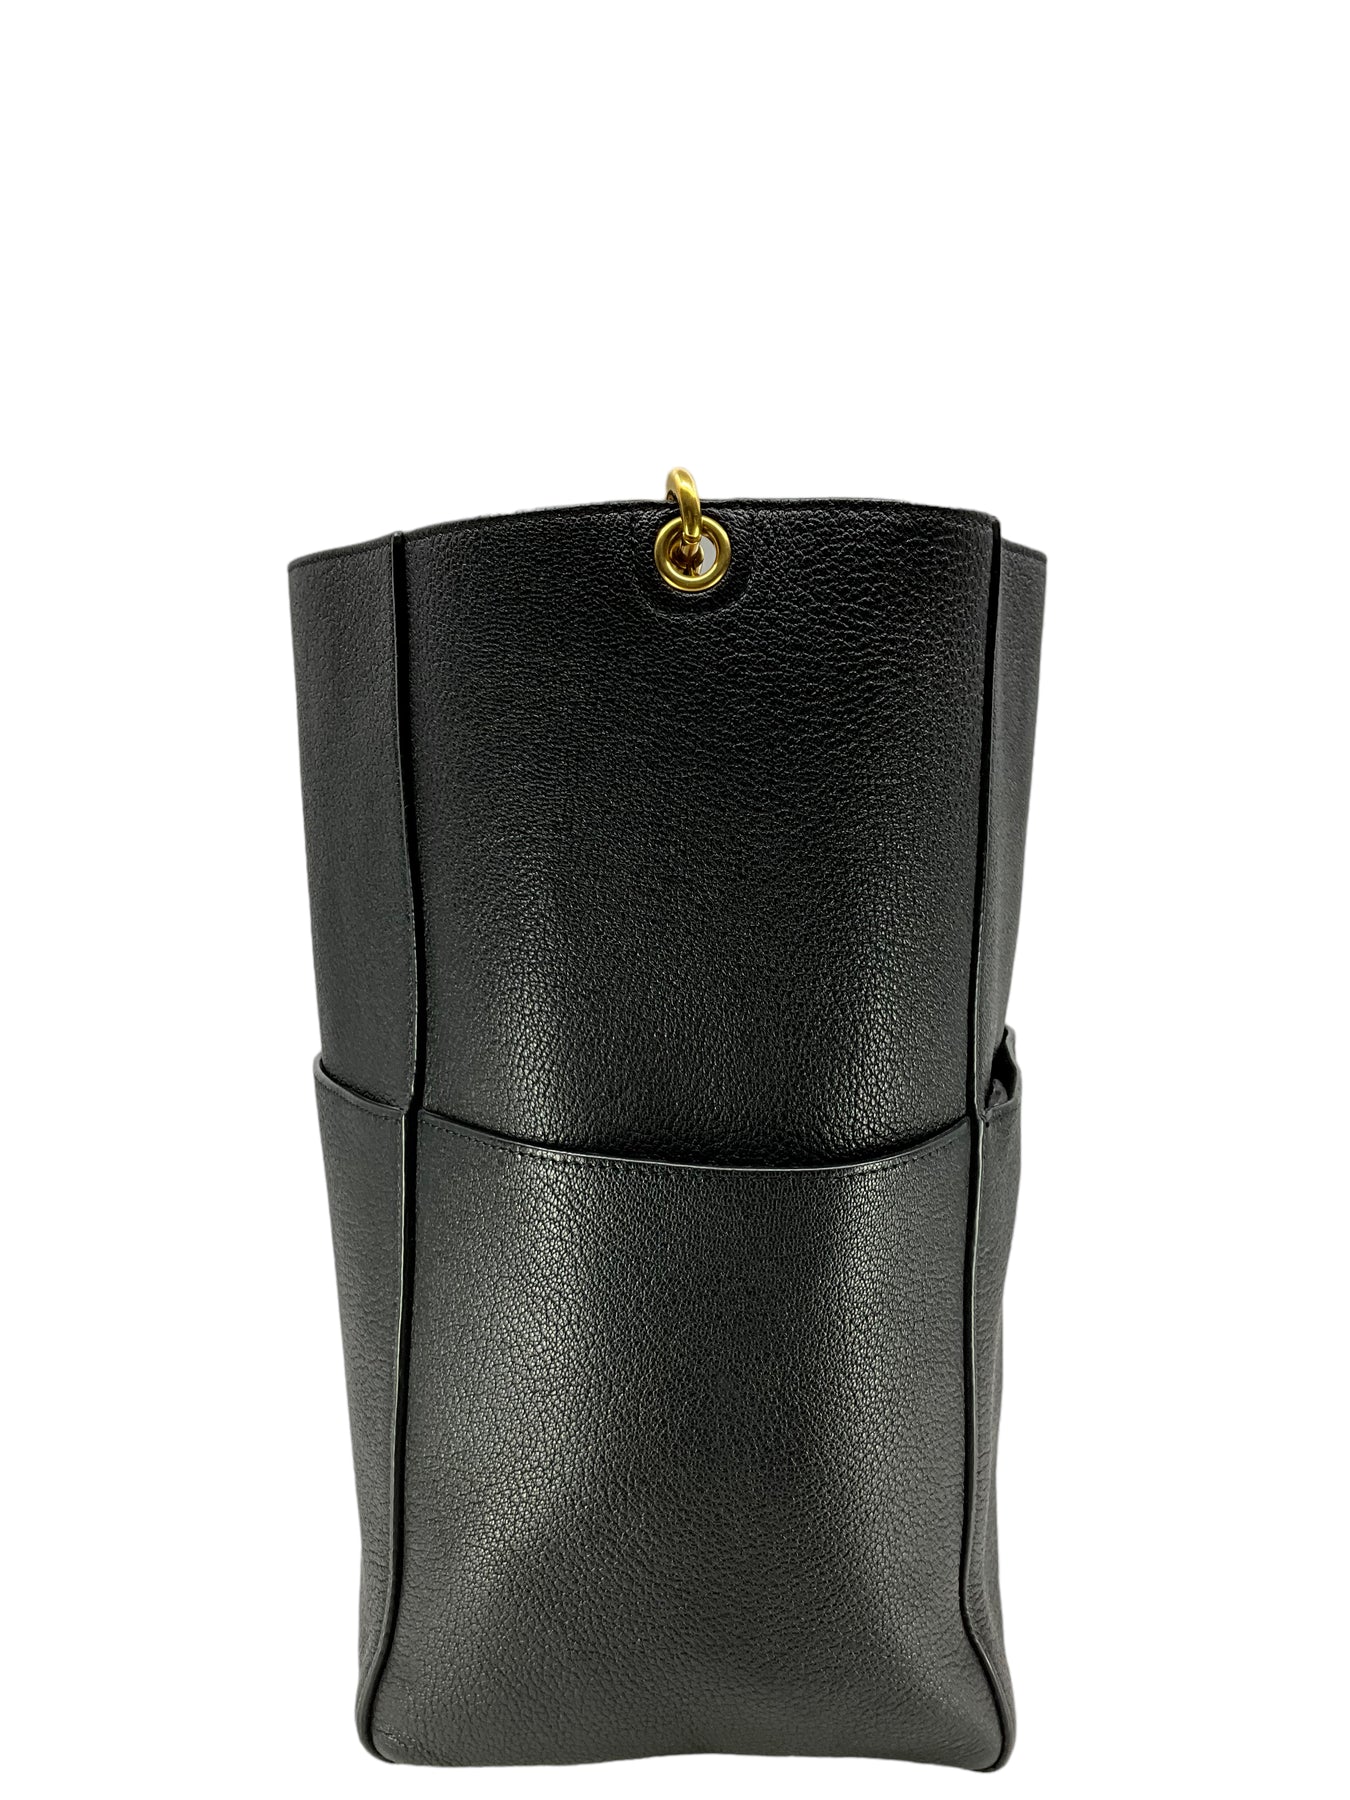 Celine Sangle Bucket Women's Leather,Suede Shoulder Bag Black